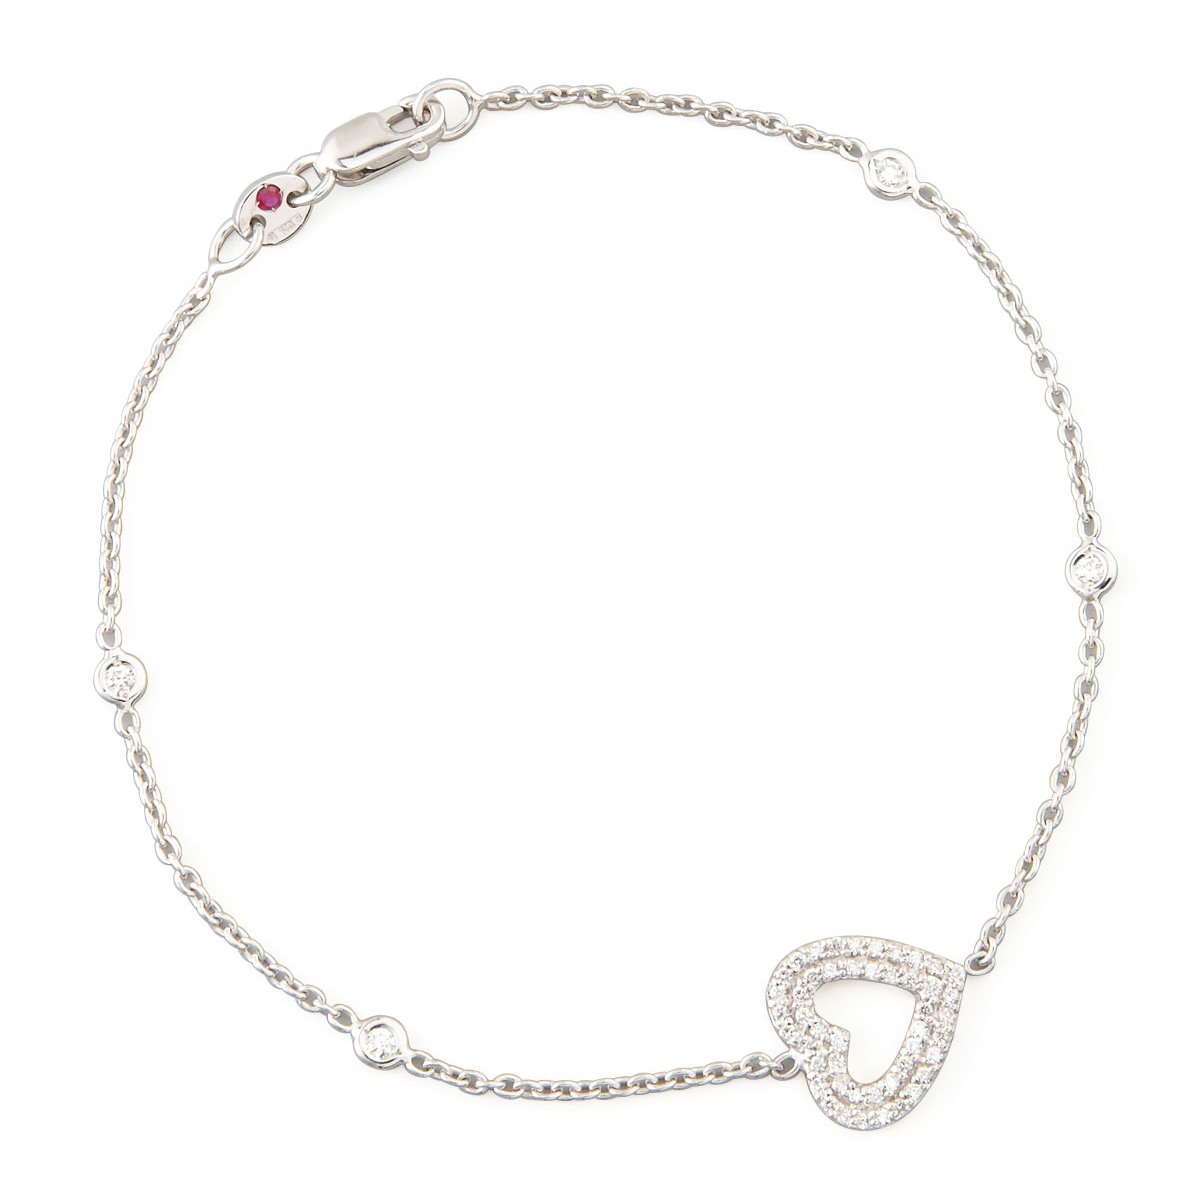 Wholesale OEM/ODM Jewelry Custom 925 Silver & CZ Bracelet Fashion 925 Silver Jewelry